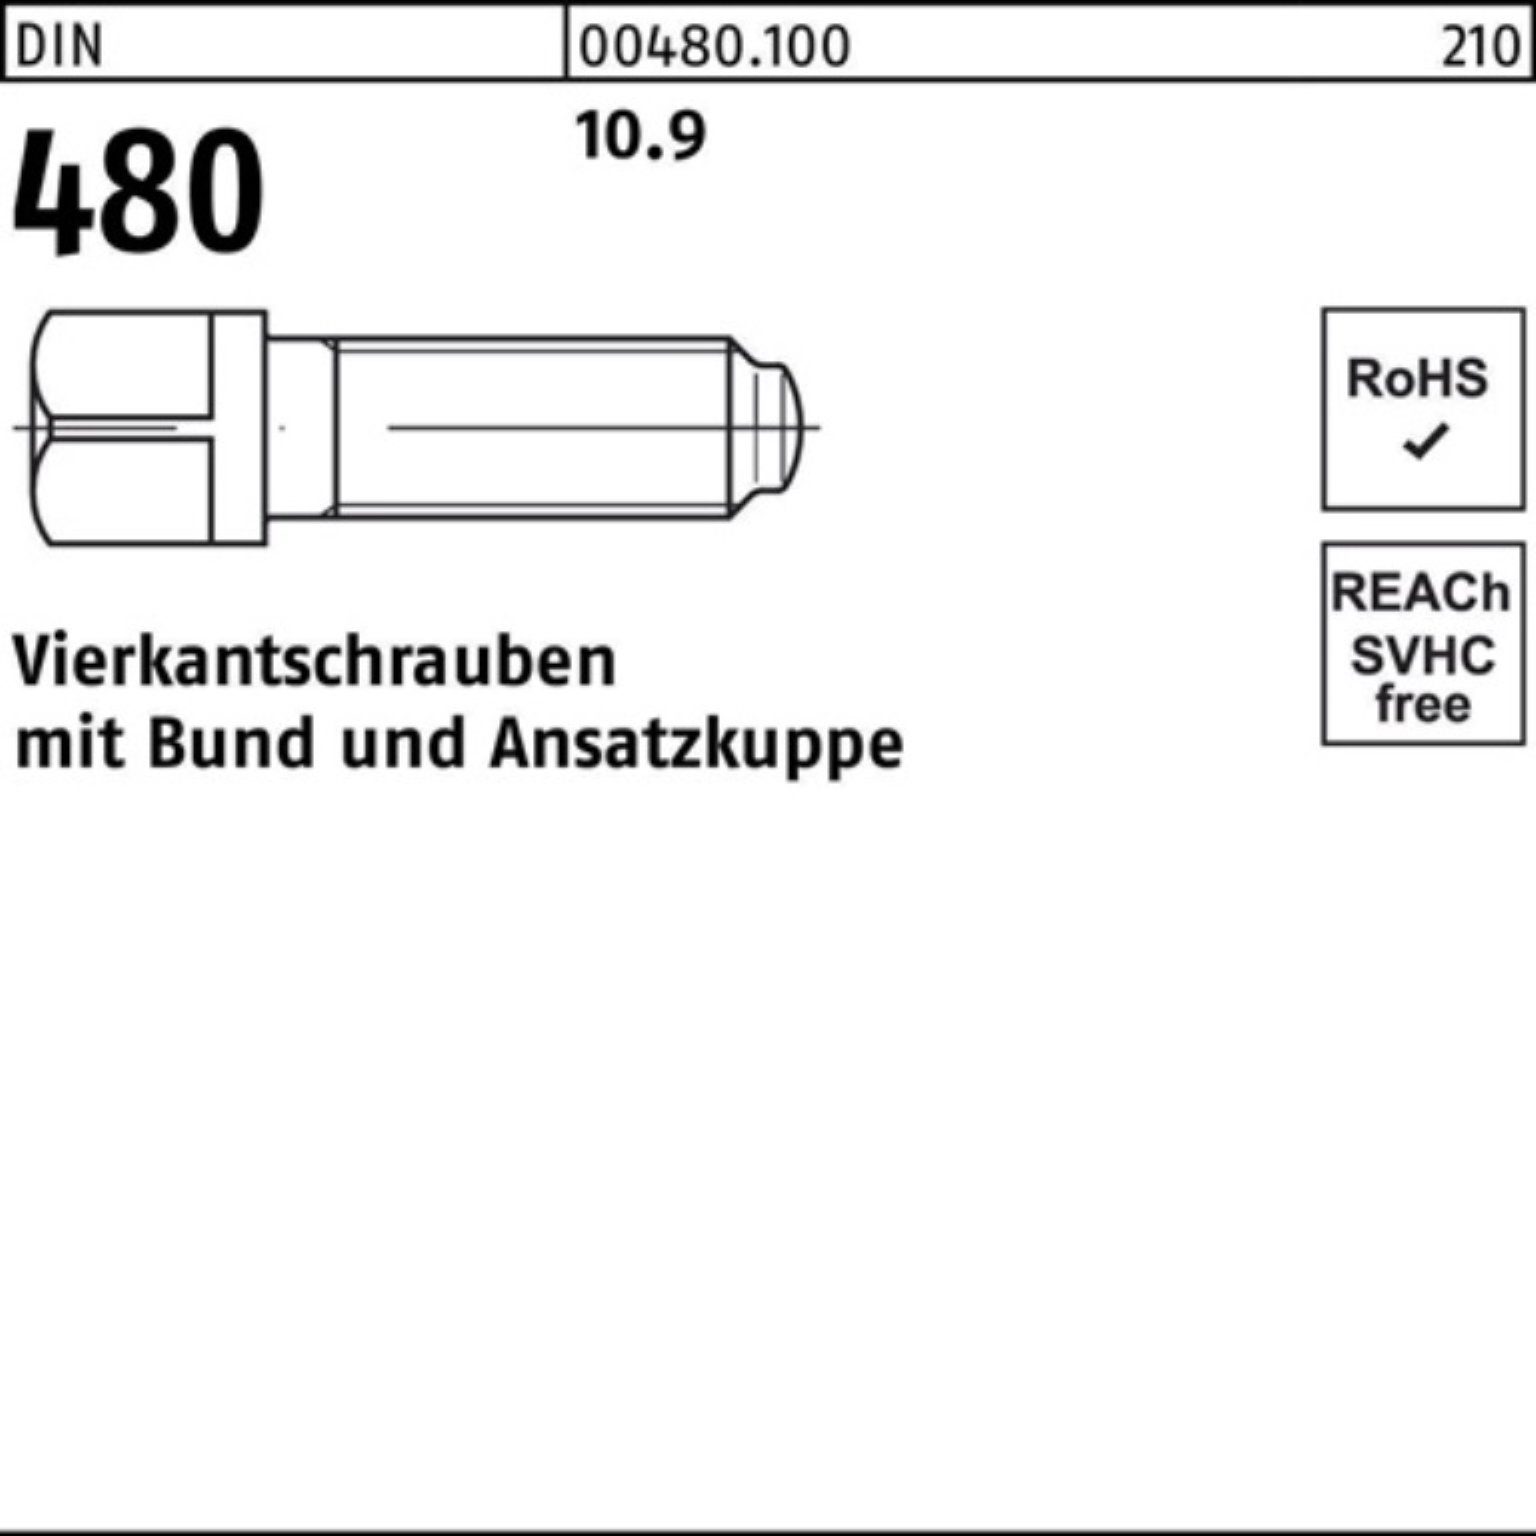 Reyher Schraube 480 Vierkantschraube 10 10.9 Bund/Ansatzkuppe DIN Pack 60 S 100er M16x